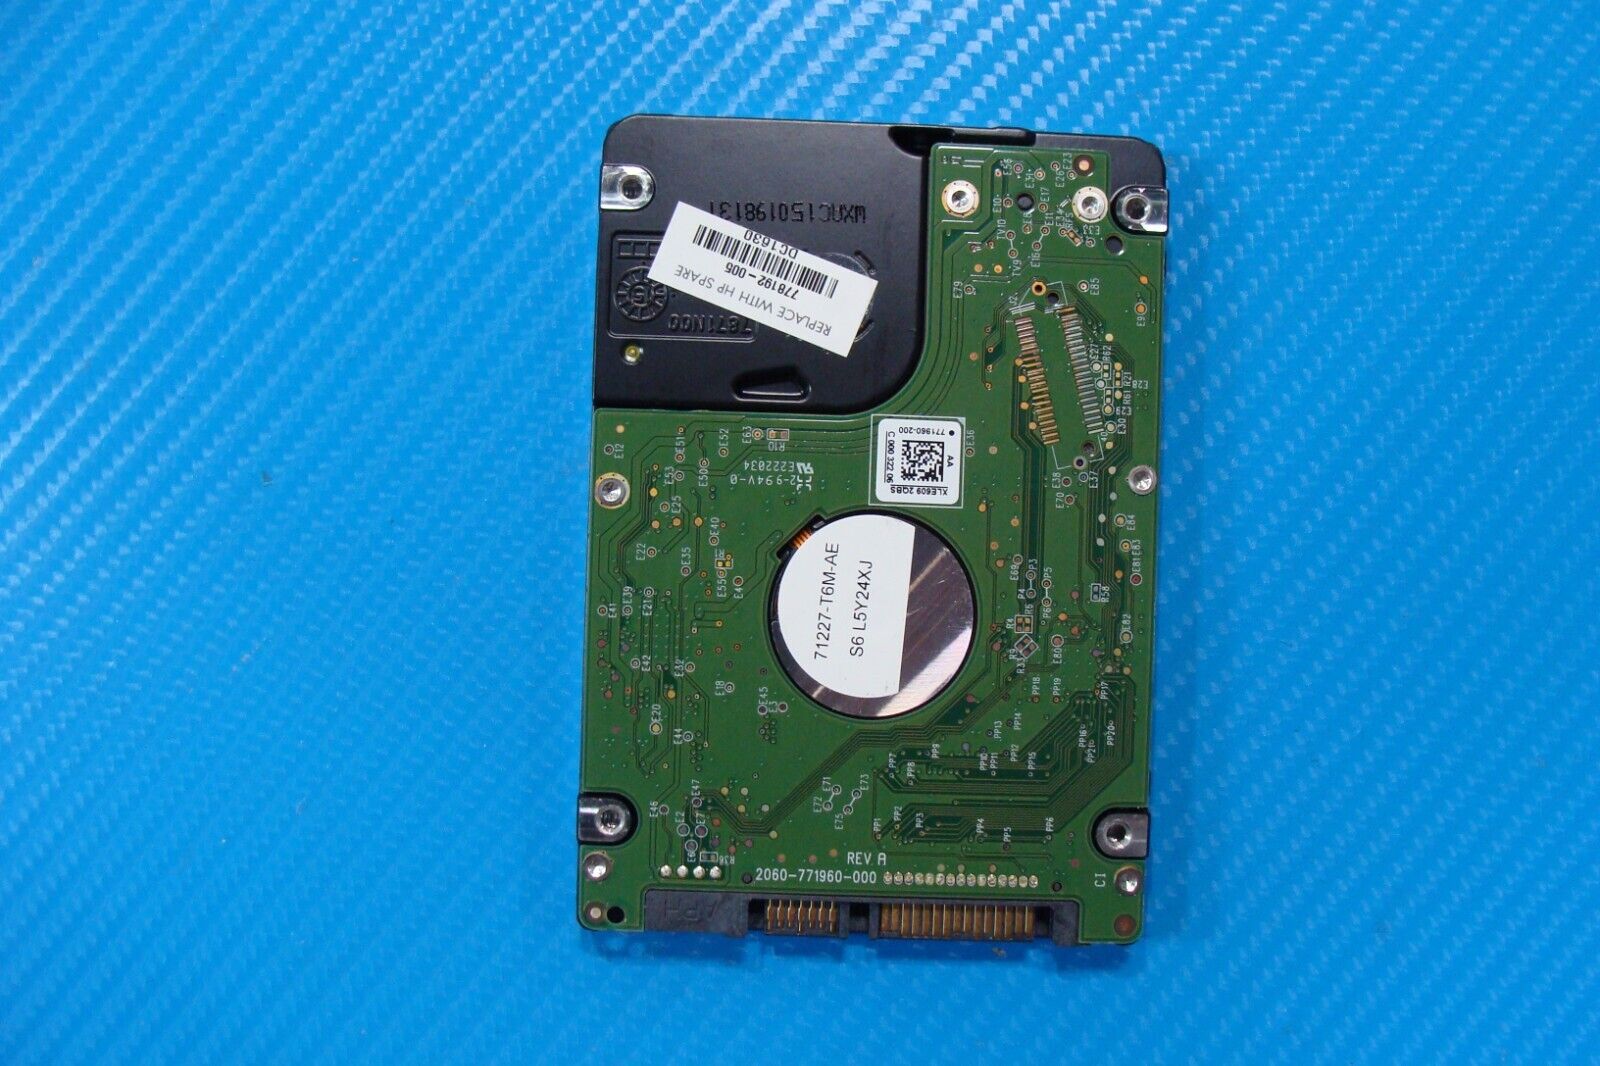 HP 15-an051dx WD Blue 1TB SATA 2.5